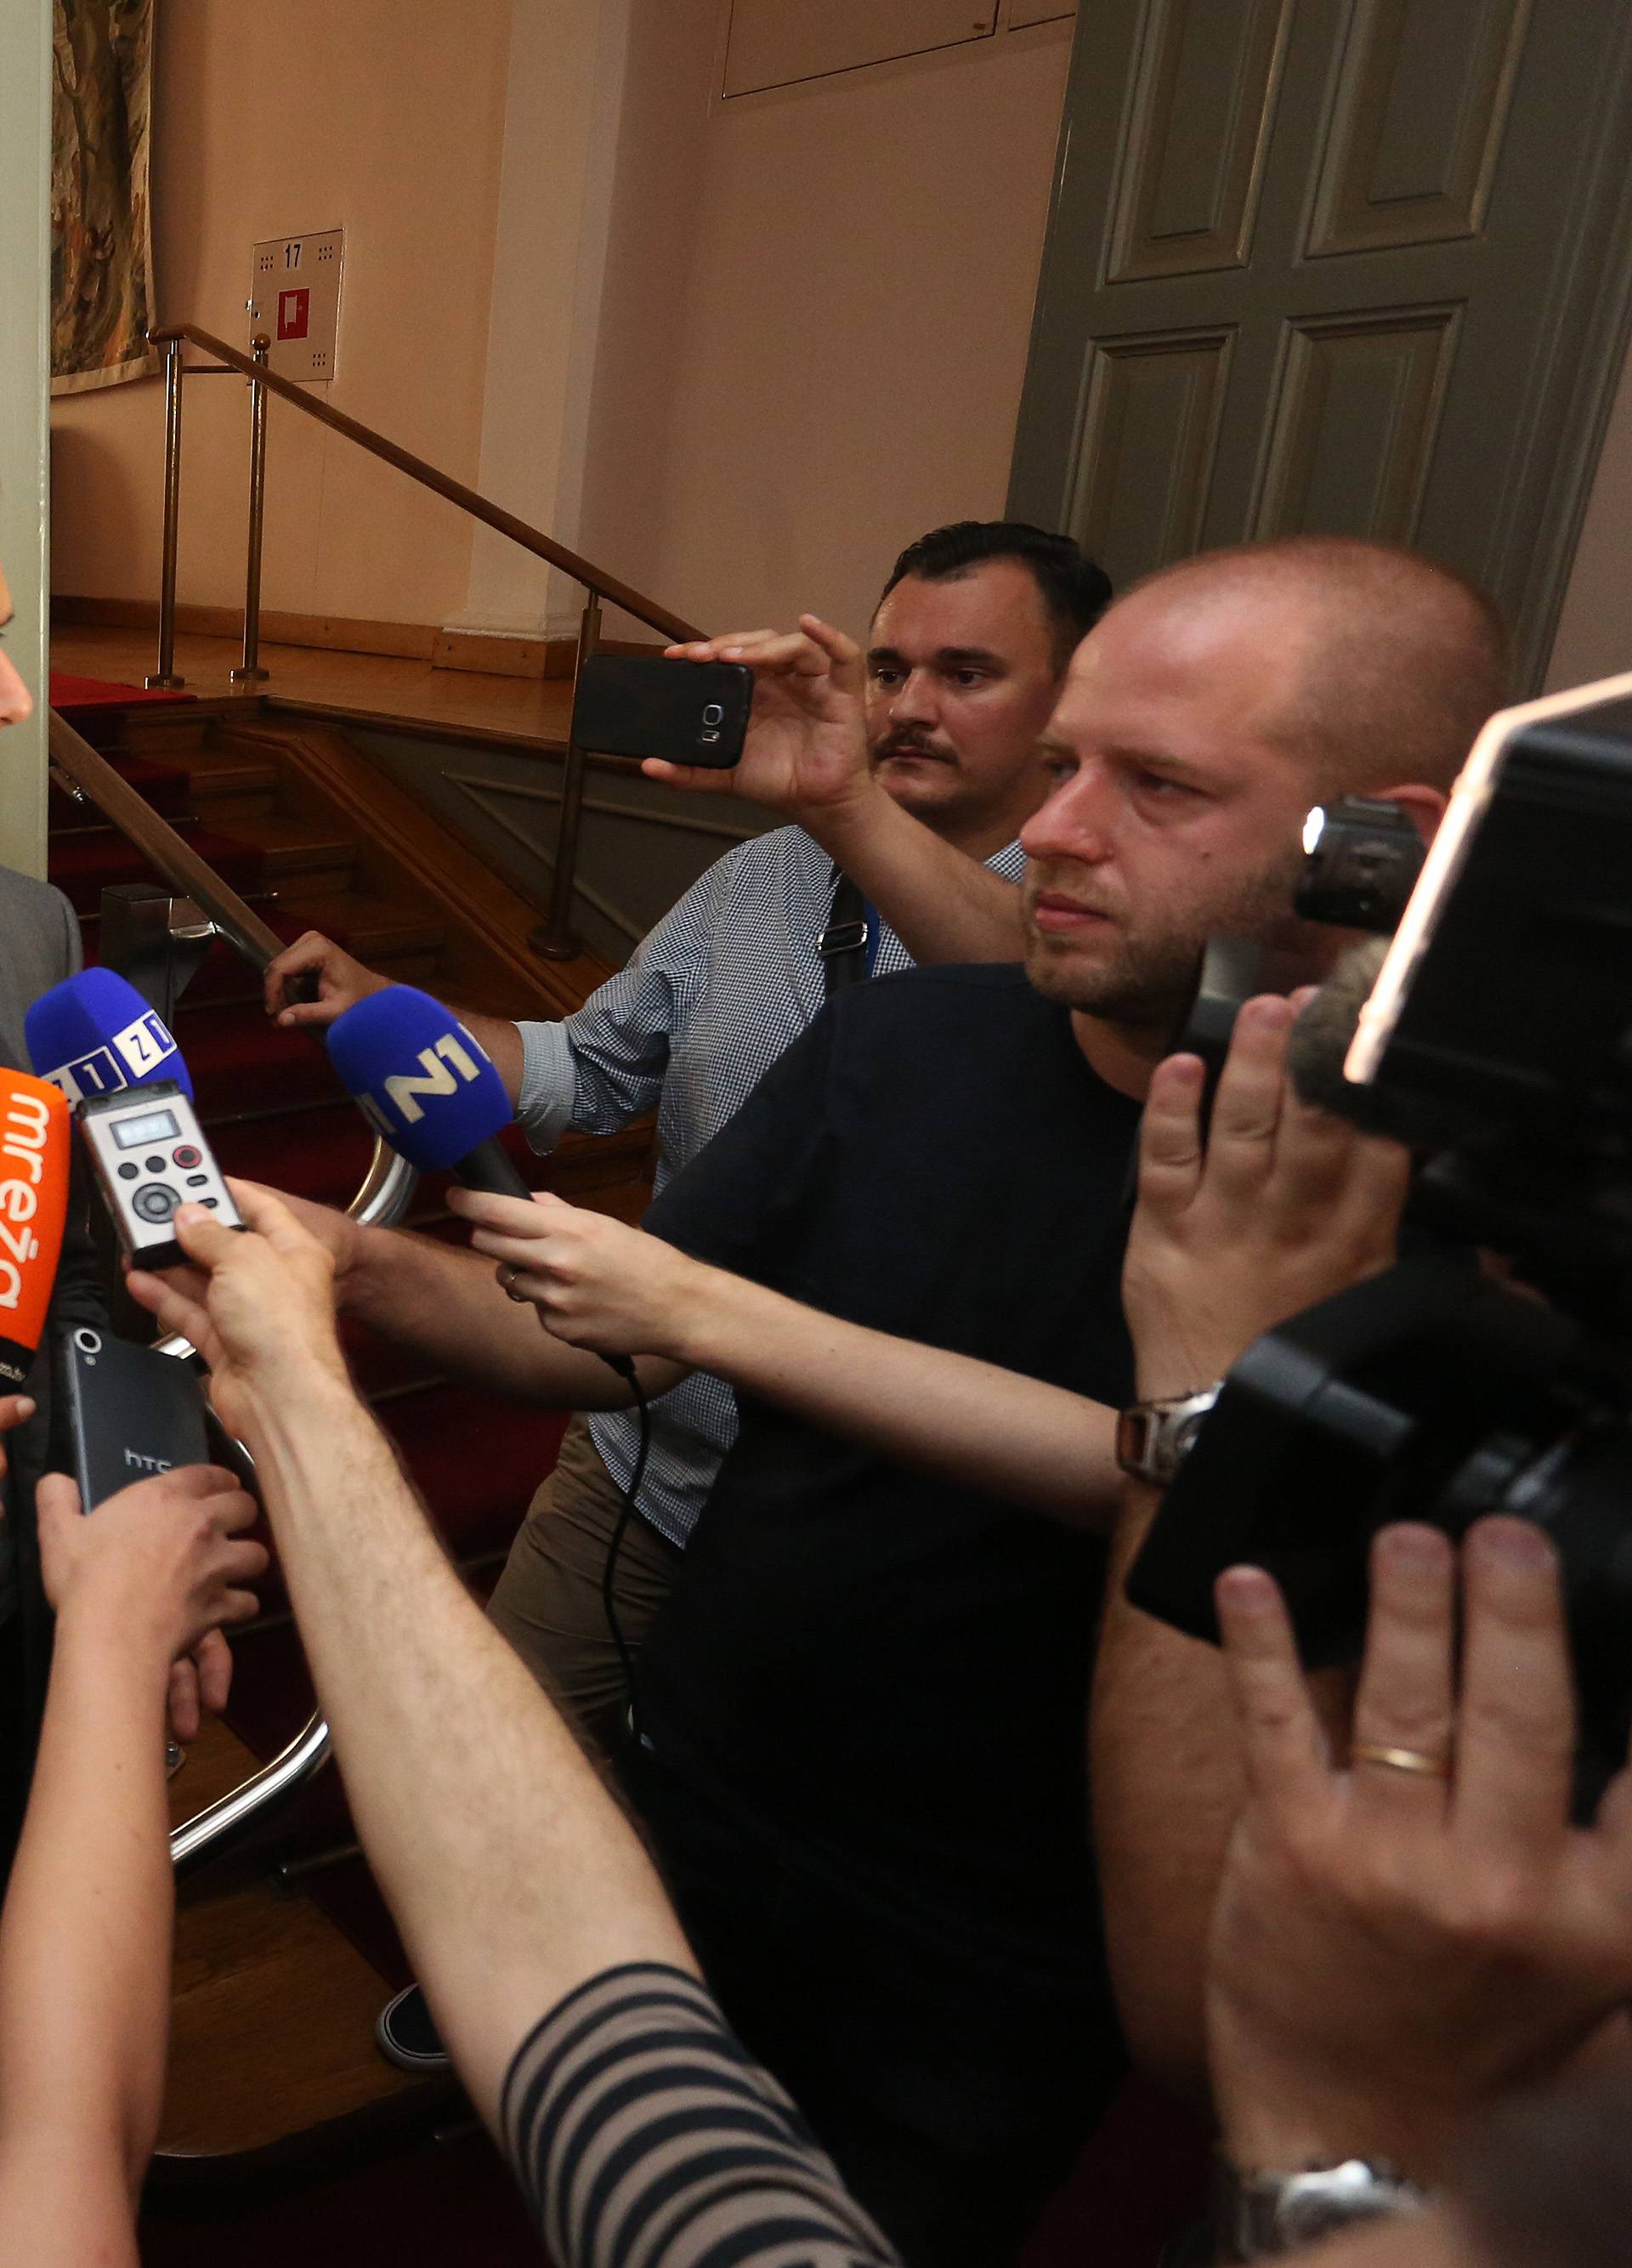 Lustig leti iz Skupštine zbog Tita: Ne želi dati svoj potpis